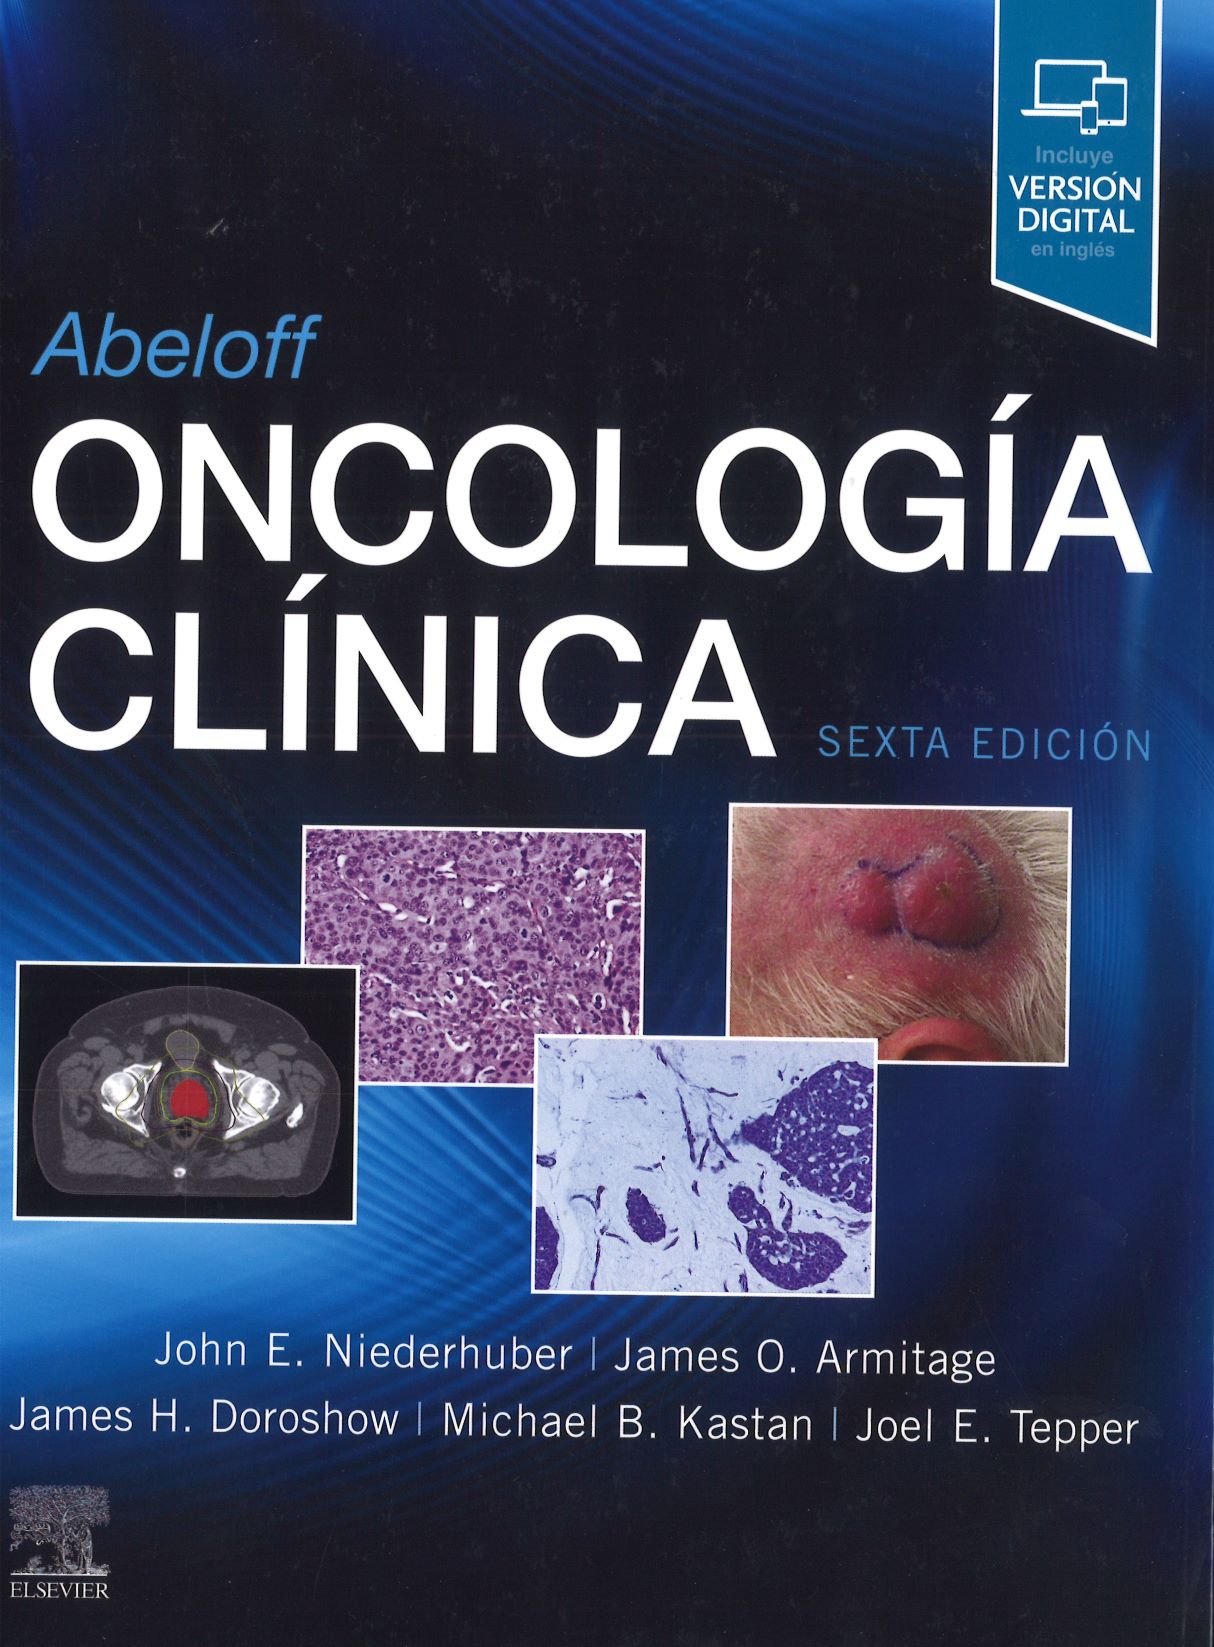 Imagen de portada del libro Abeloff, oncología clínica